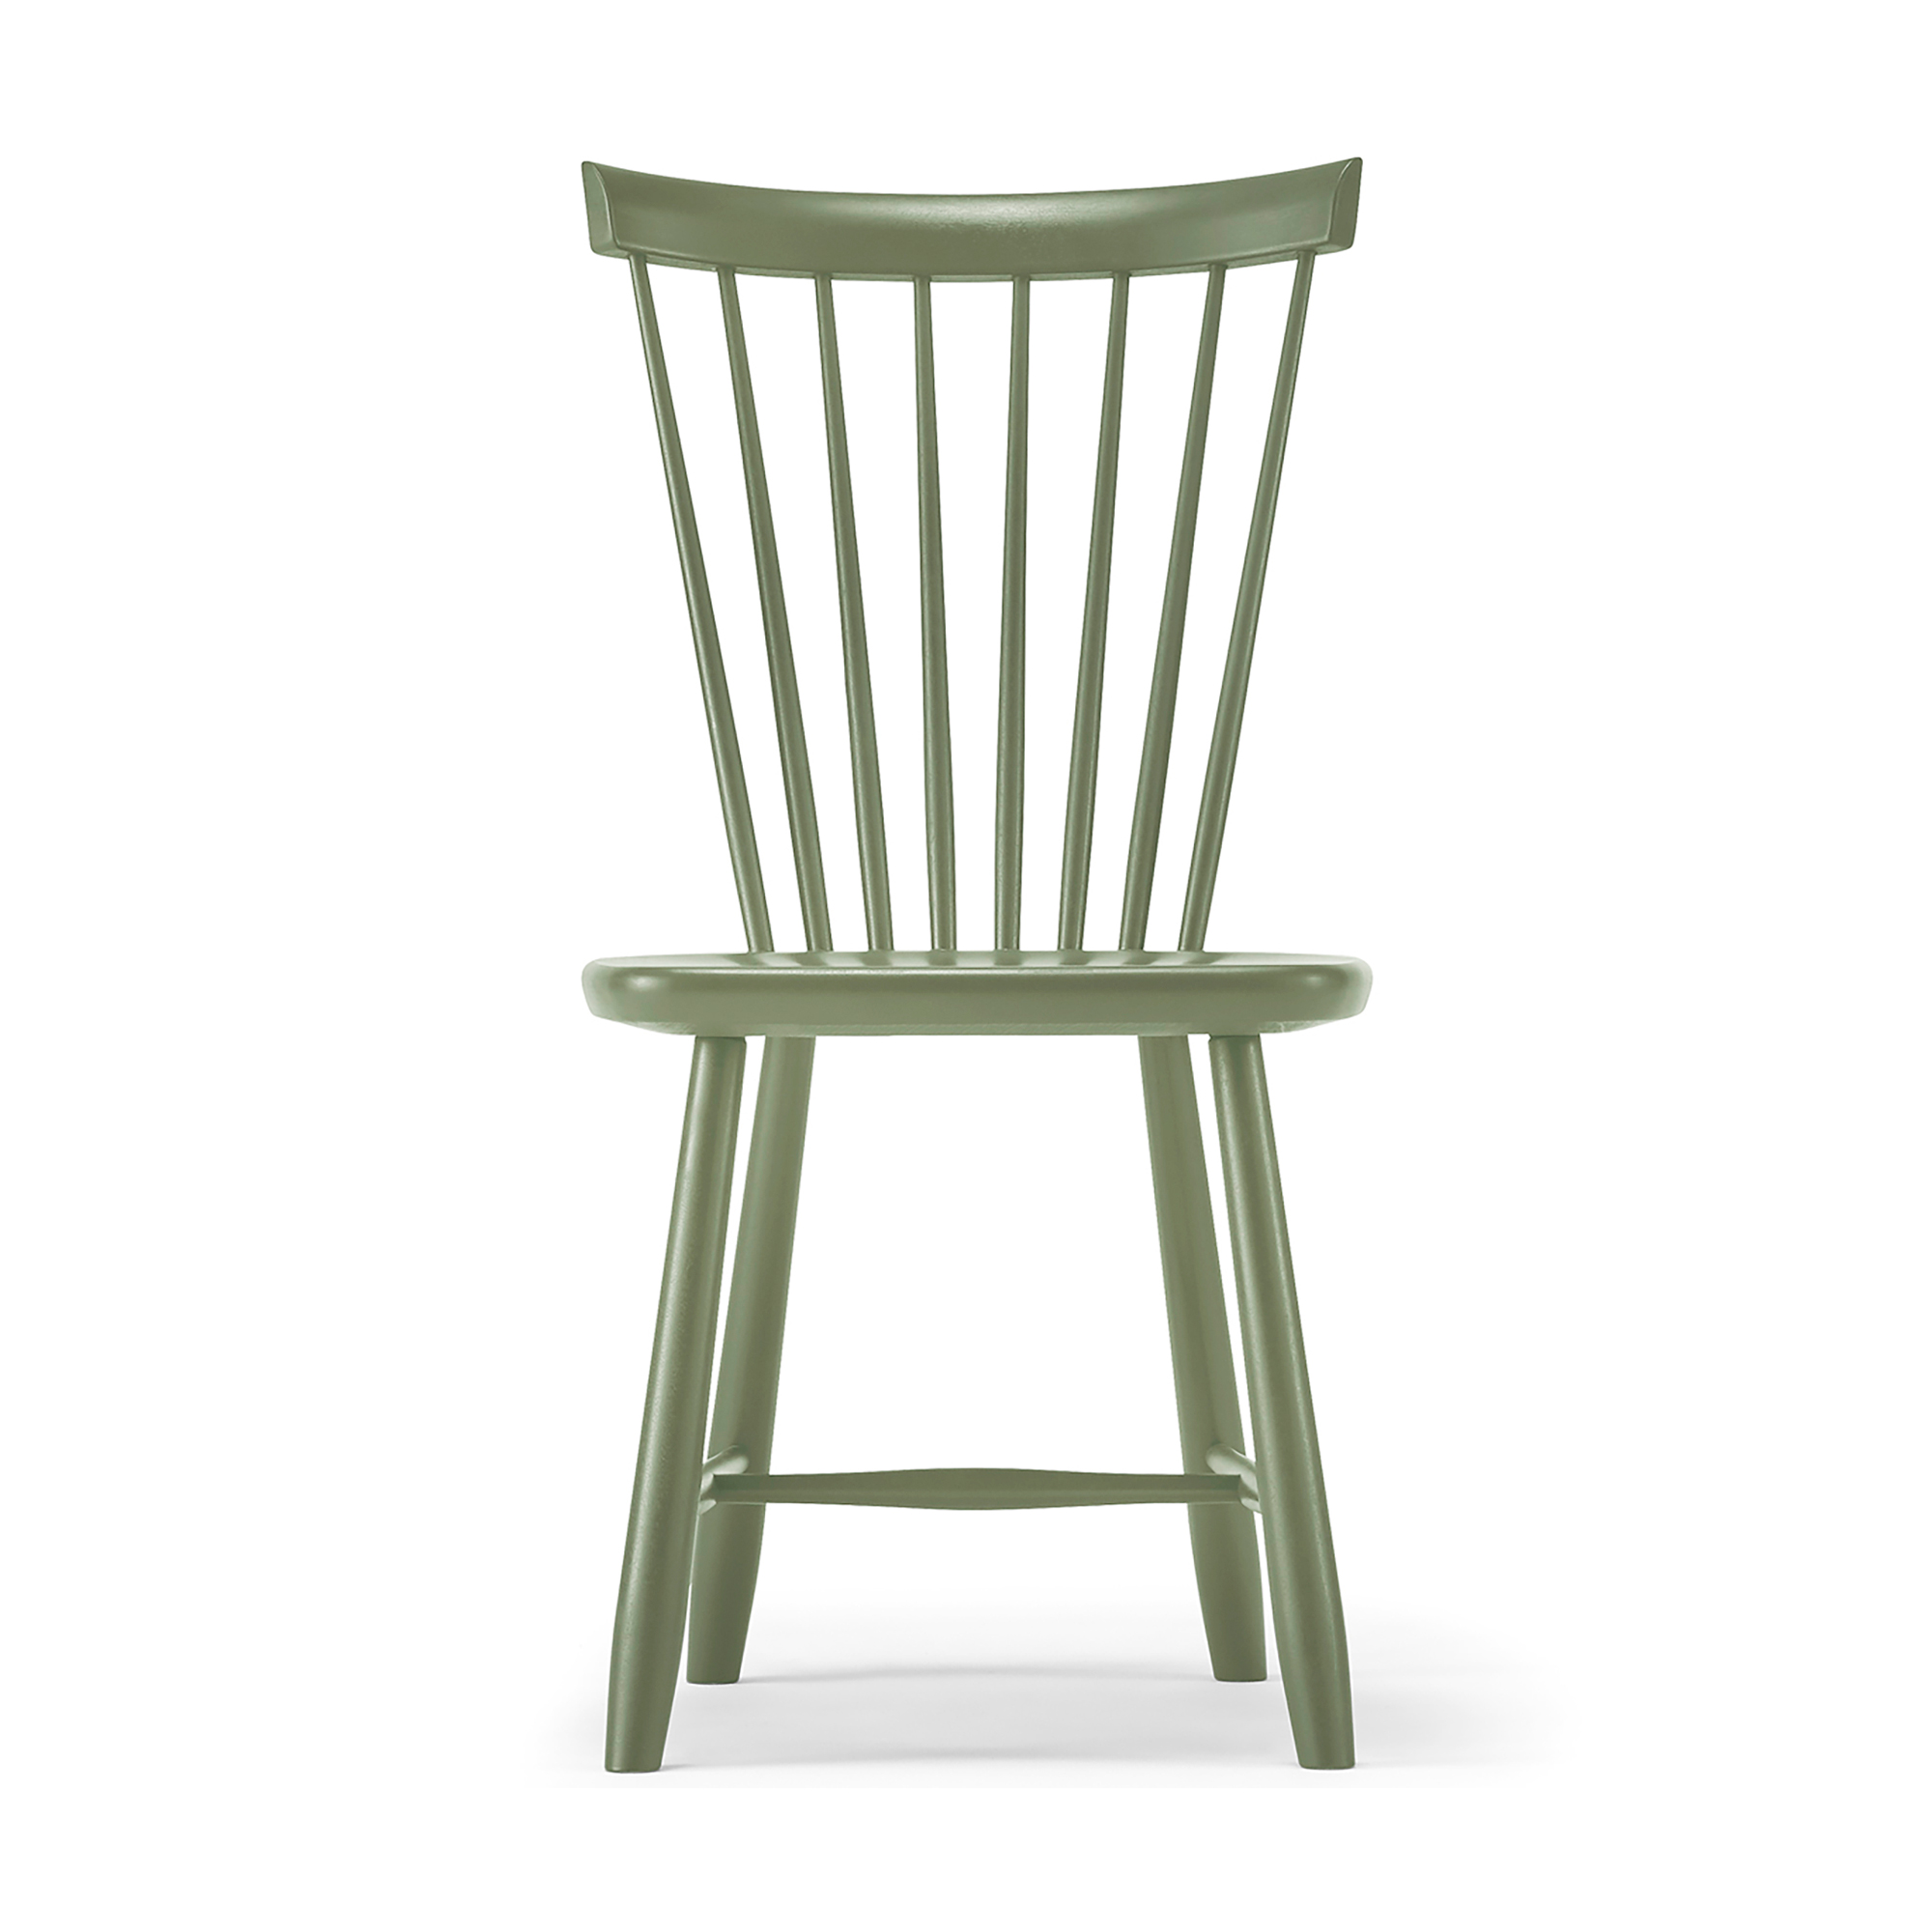 Lilla Åland stol olivgrön 64